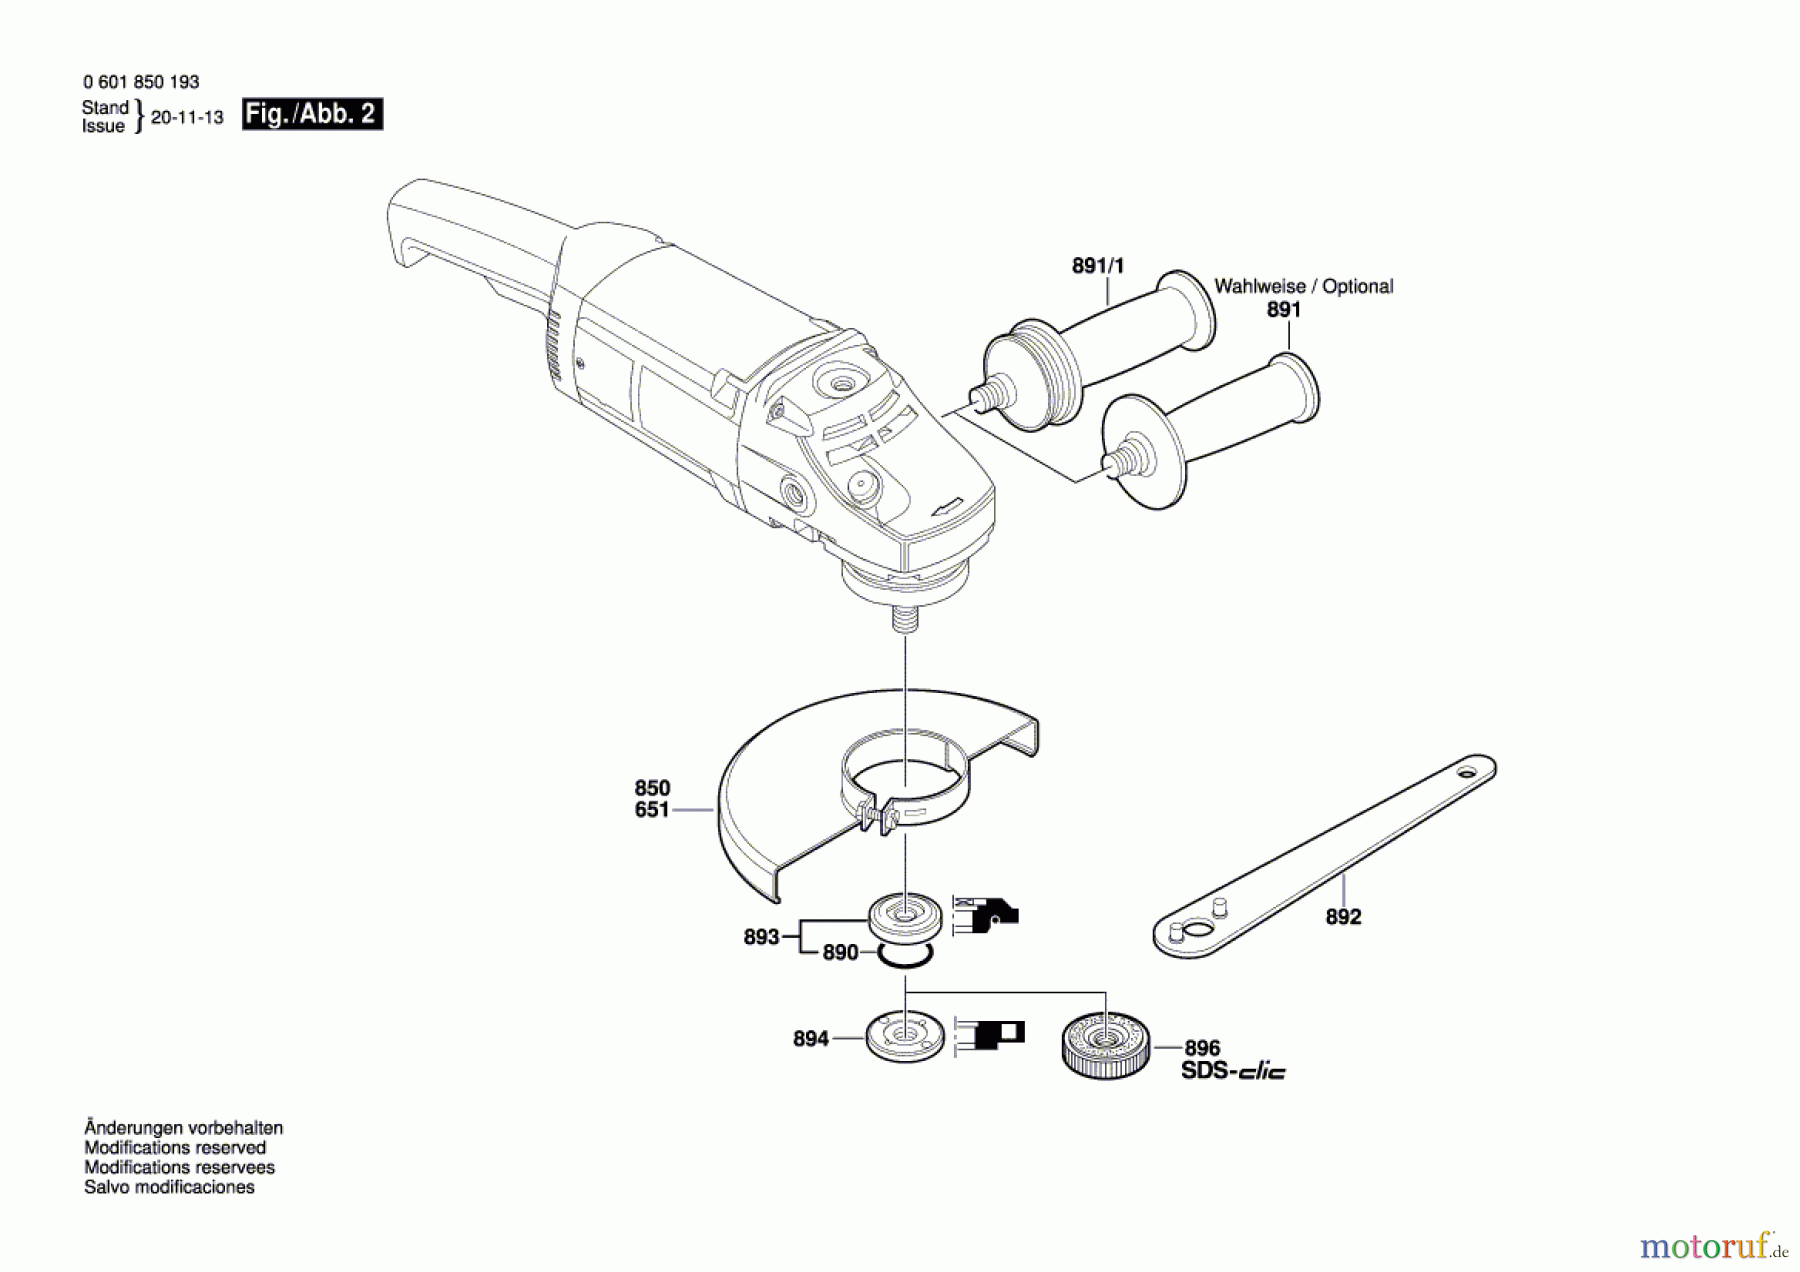  Bosch Werkzeug Winkelschleifer GWS 20-230 Seite 2